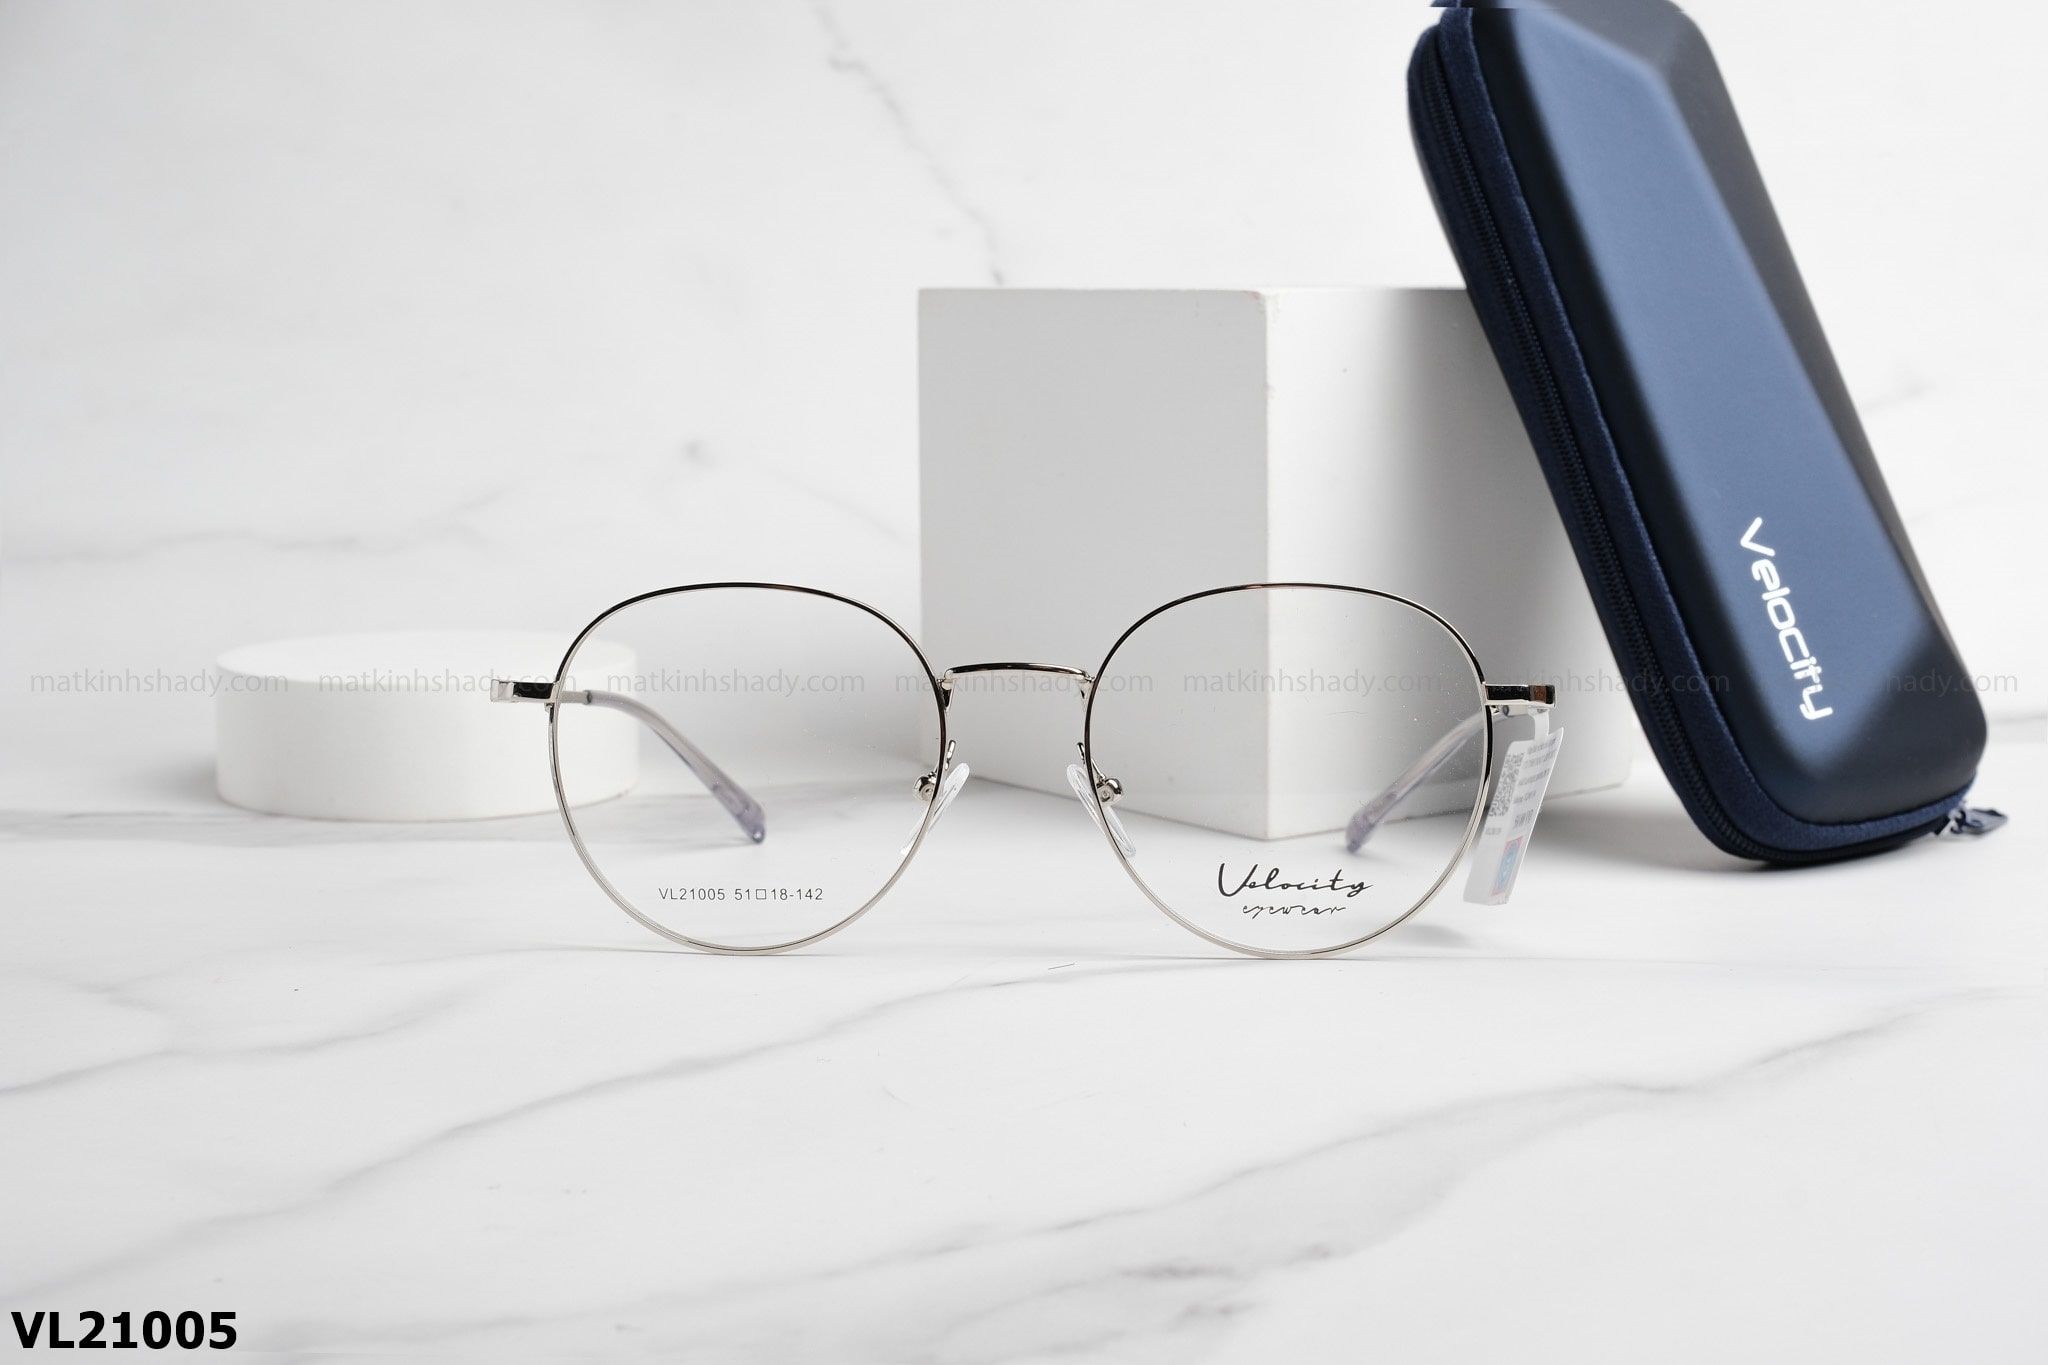  Velocity Eyewear - Glasses - VL21005 